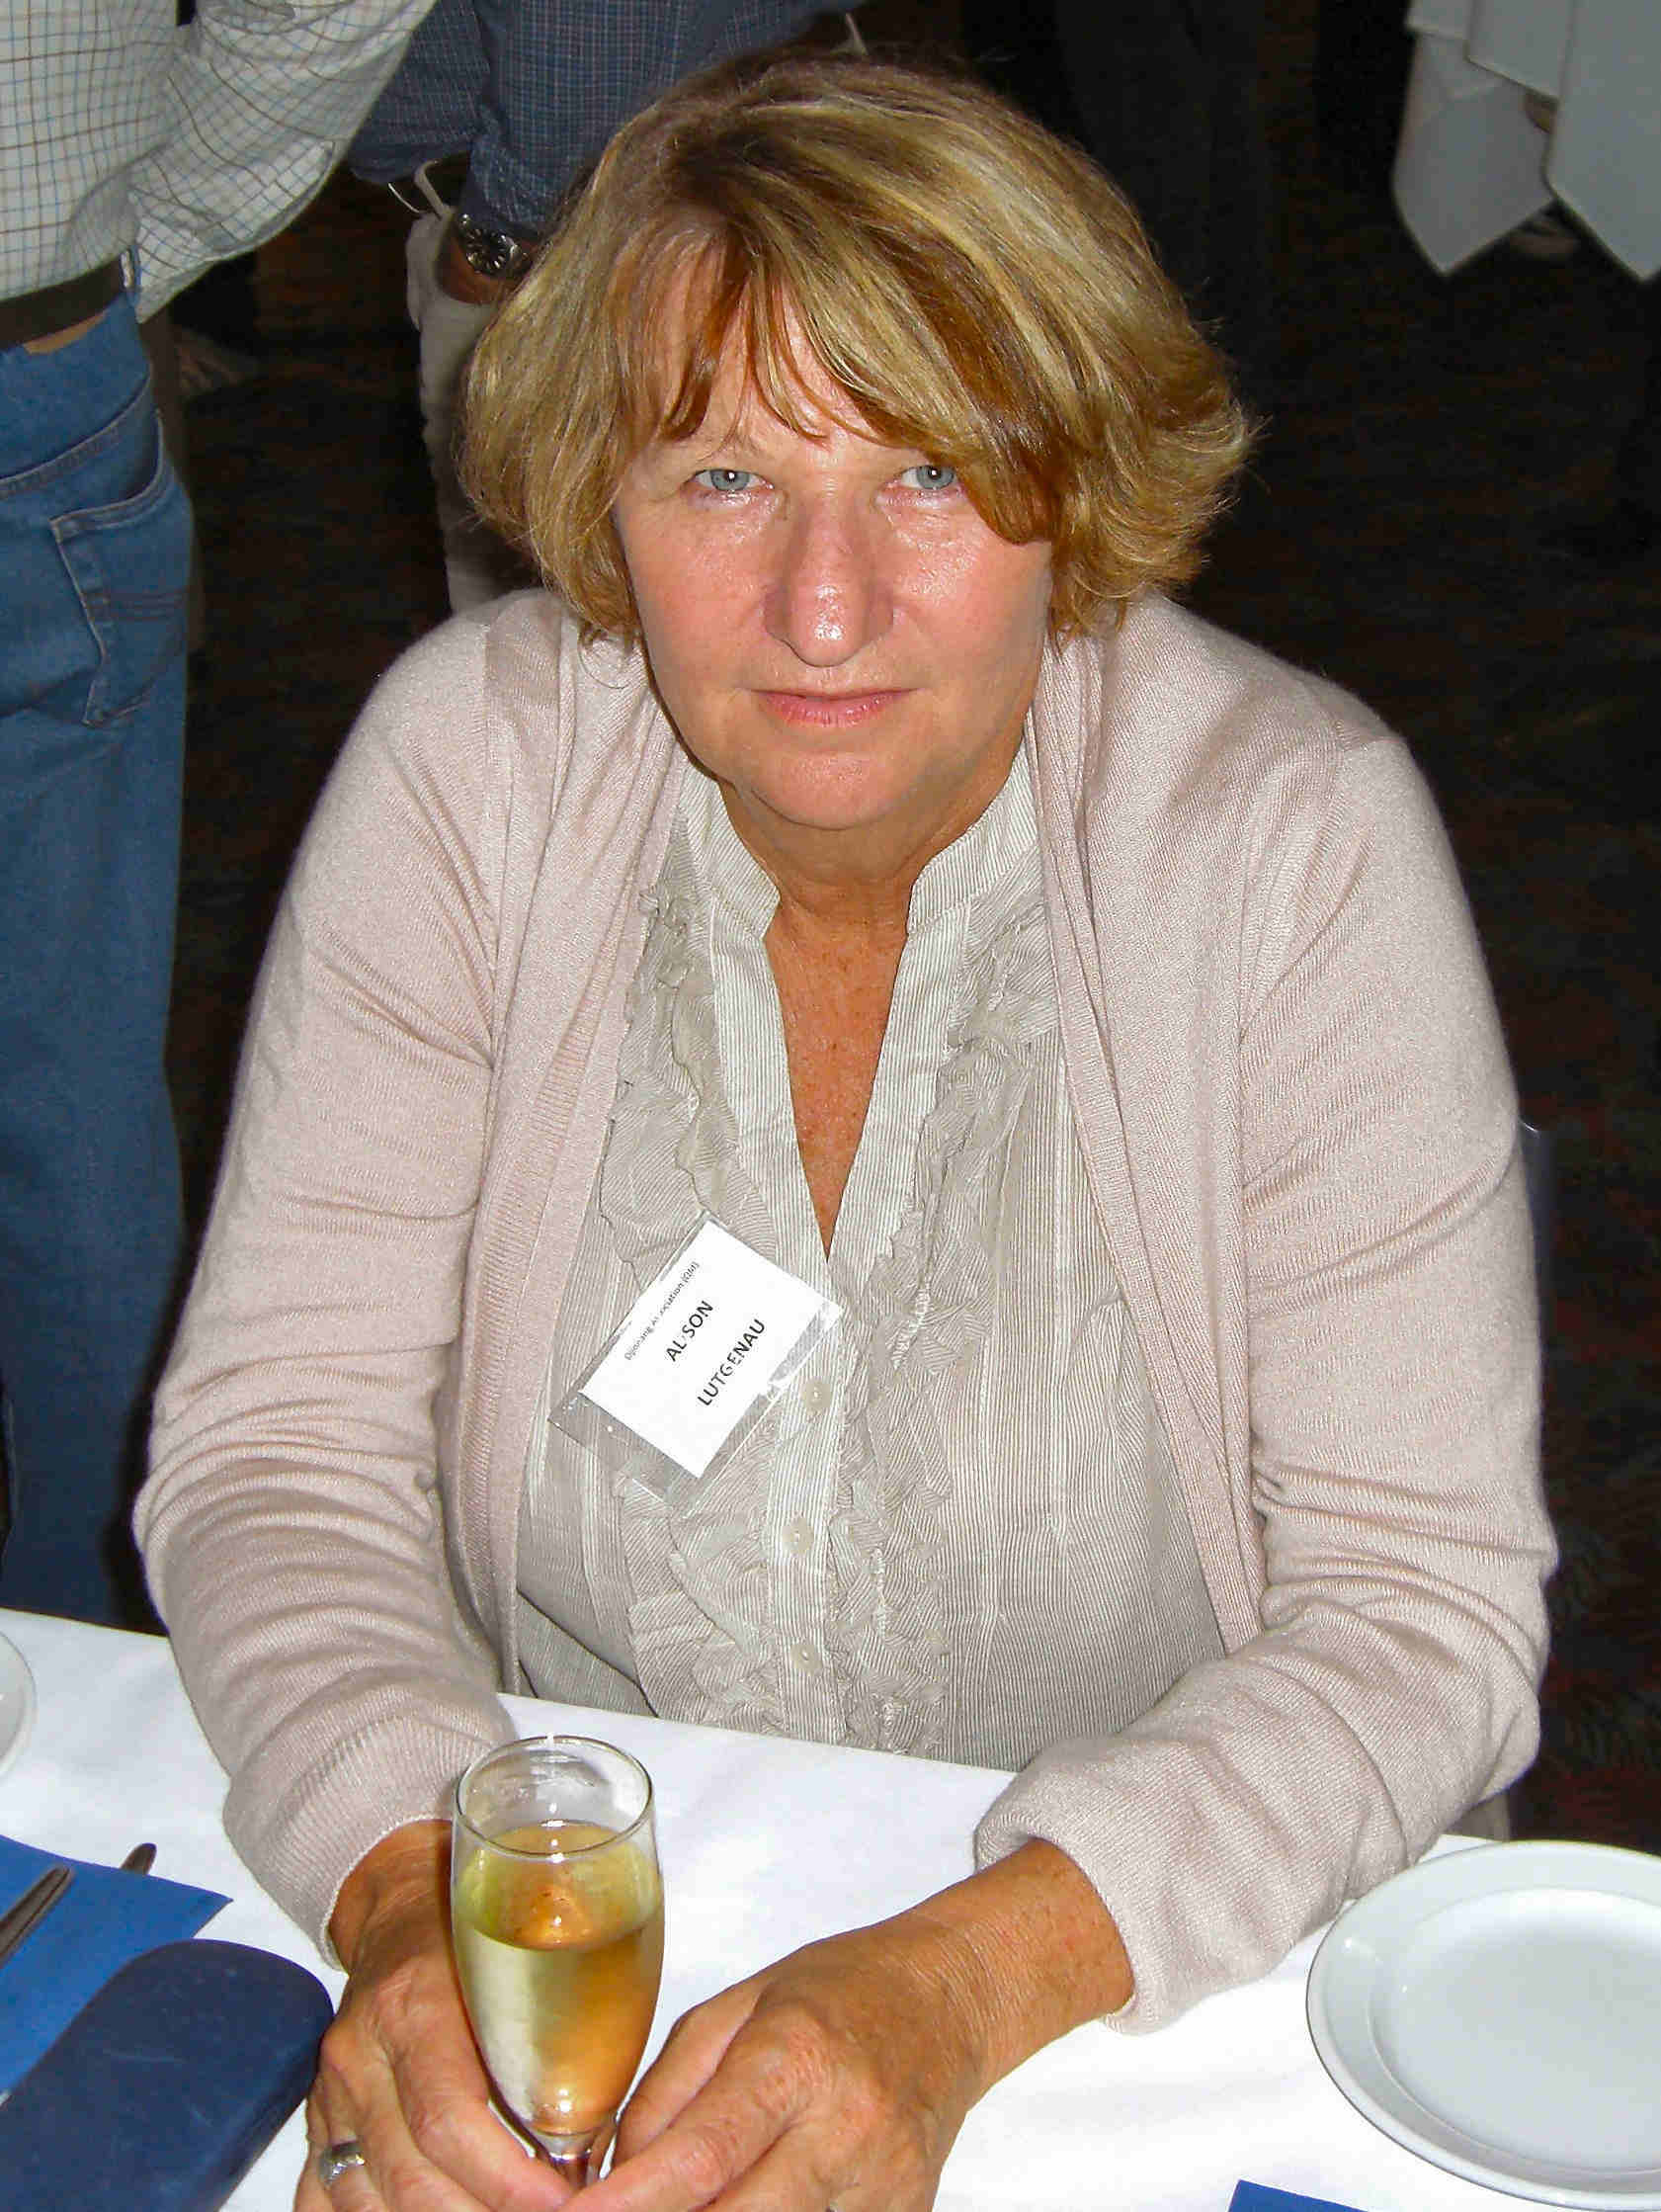 Alison Lutgenau